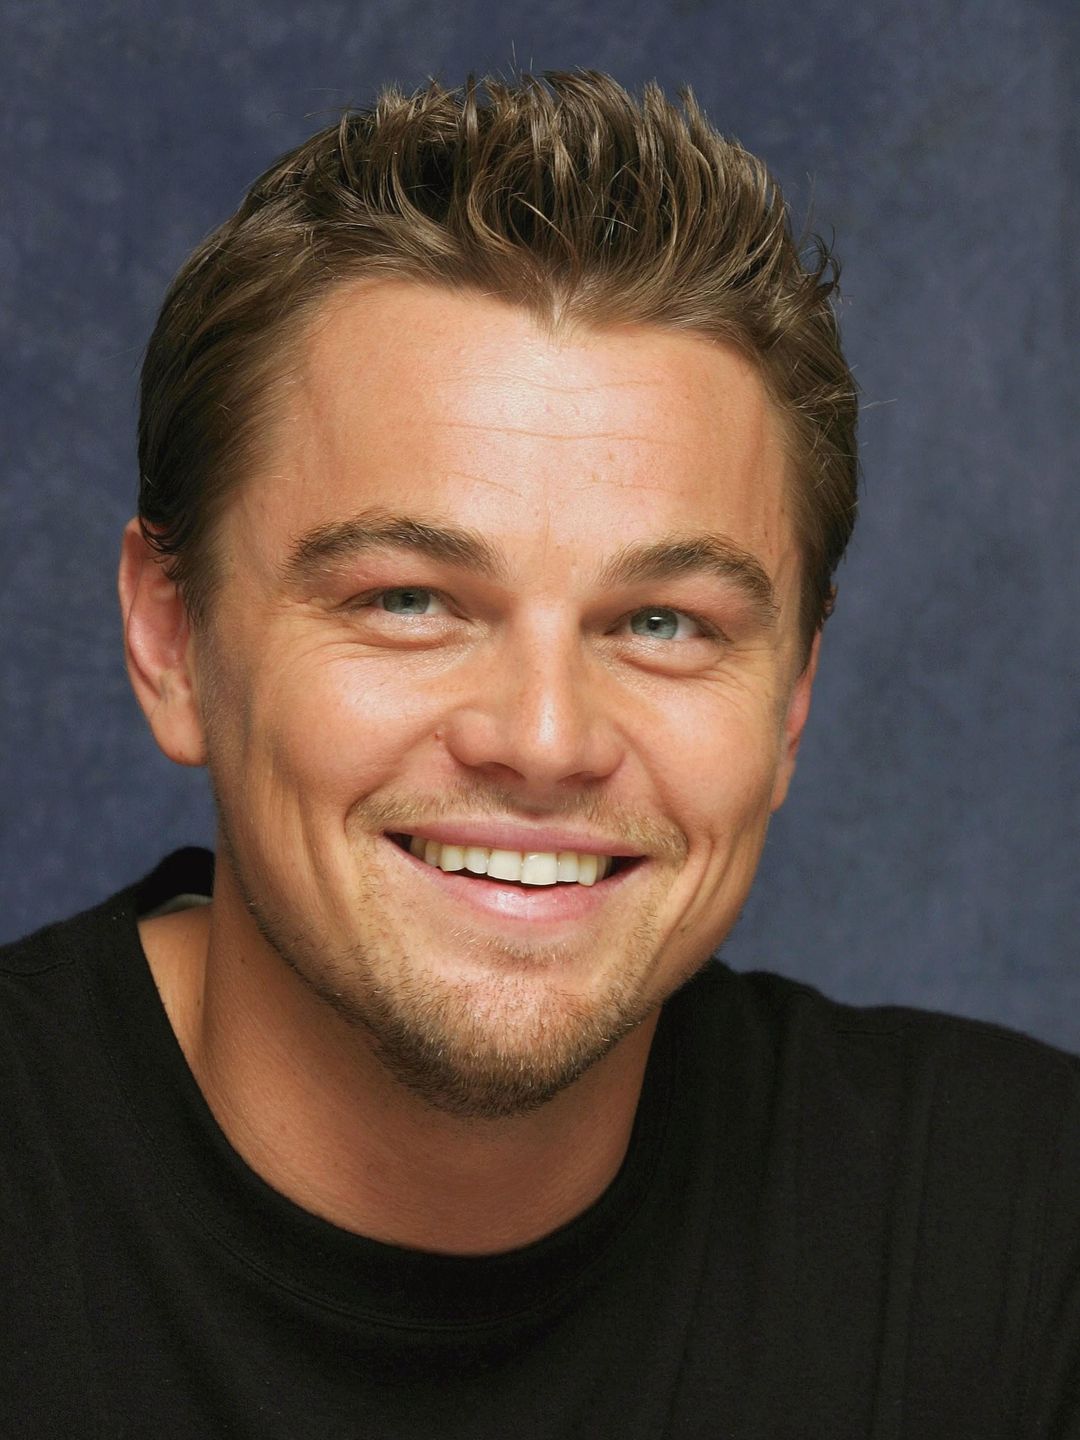 Leonardo DiCaprio way to success